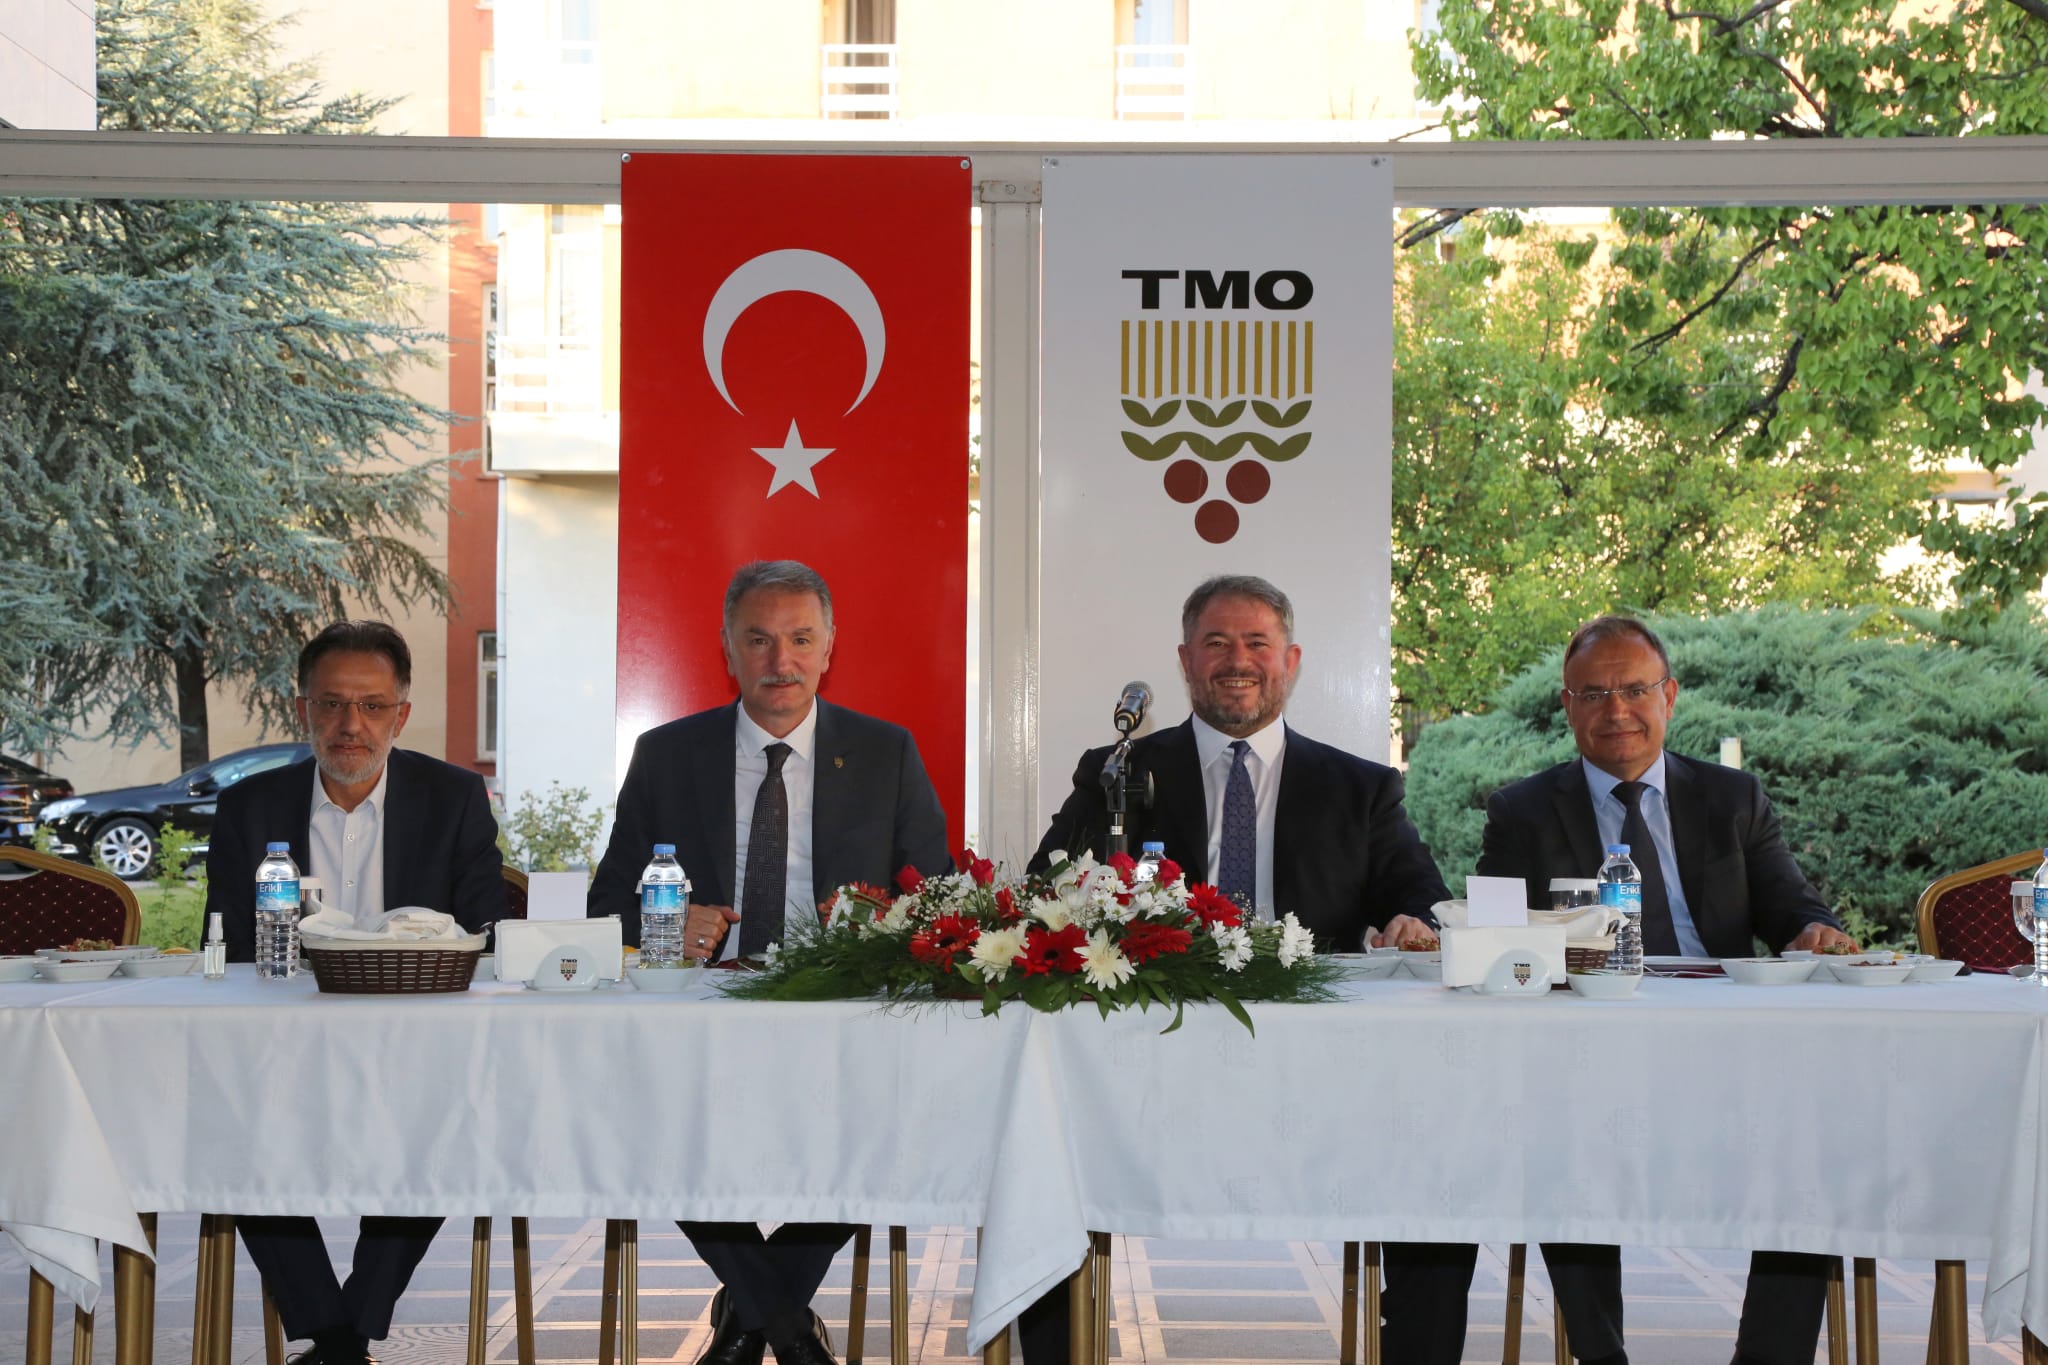 Kurumlararası Diyaloğu Geliştirme Toplantısı – TMO Genel Müdürlüğü